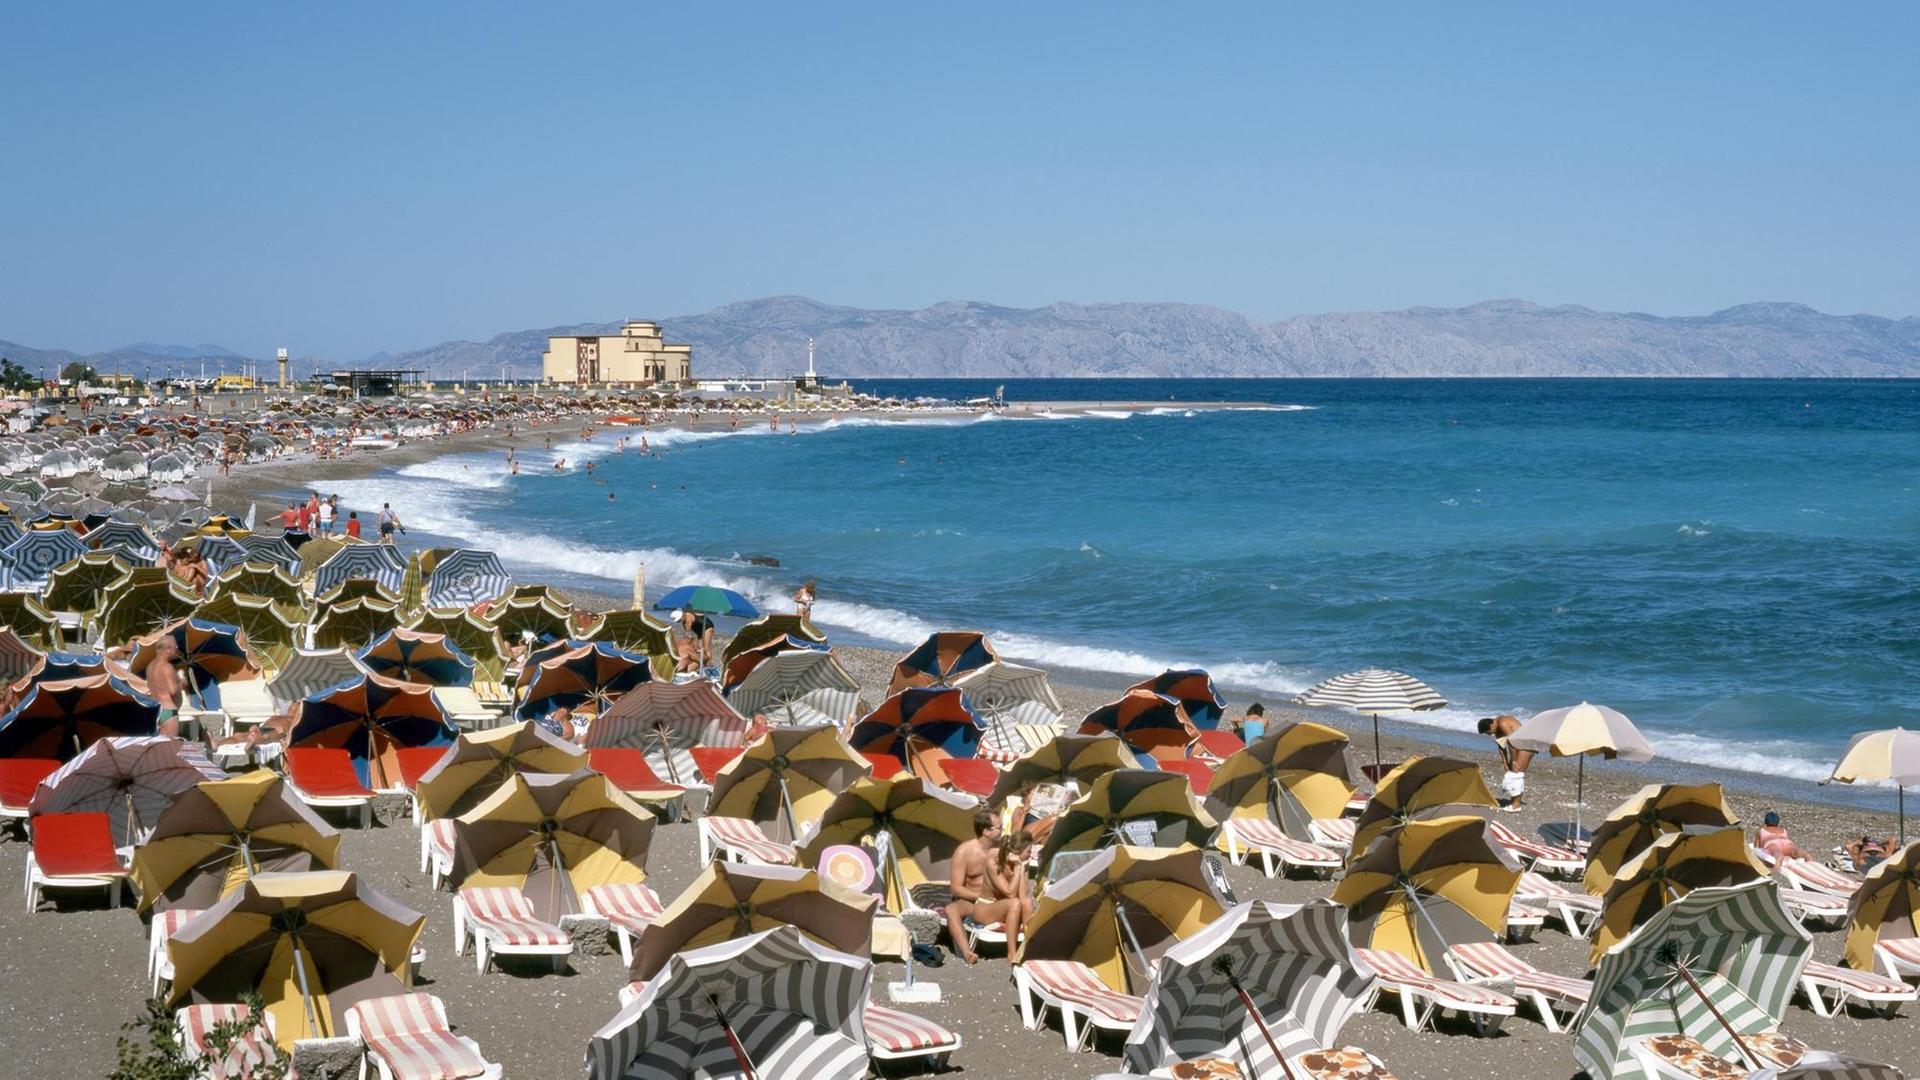 Touristen sitzen unter Sonnenschirmen und auf Liegen am Strand von Rhodos-Stadt.